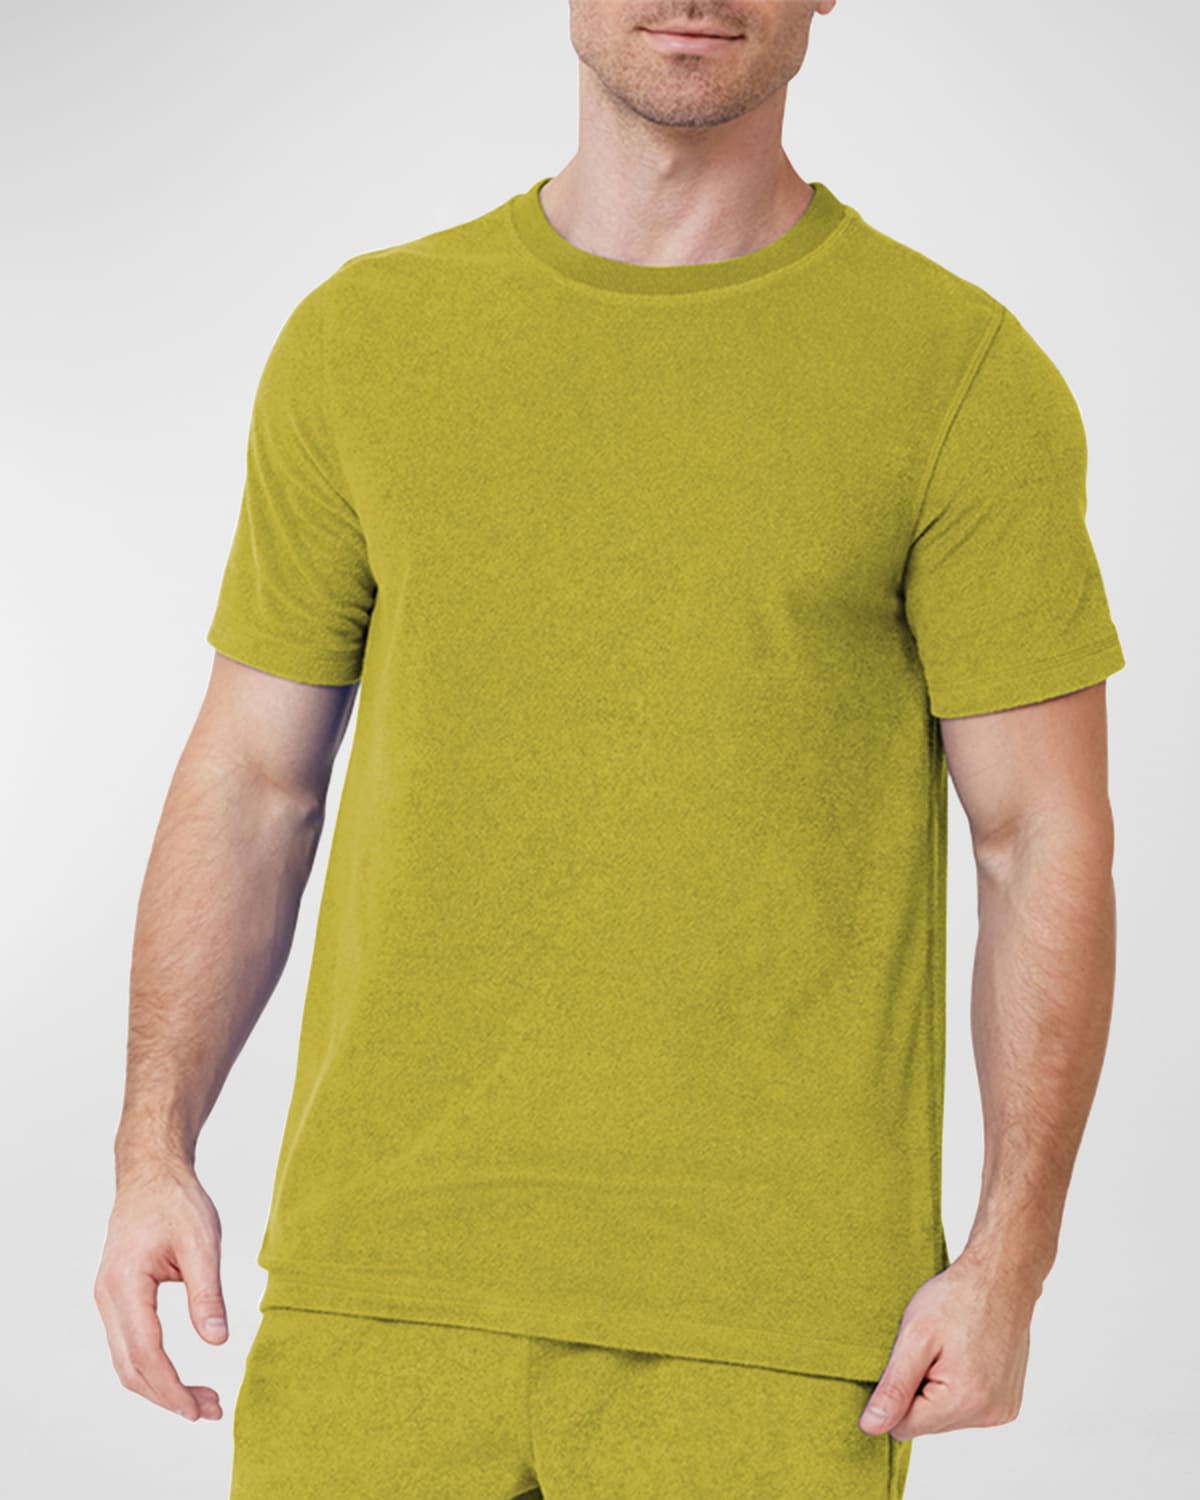 Men's Terrycloth Crewneck T-Shirt